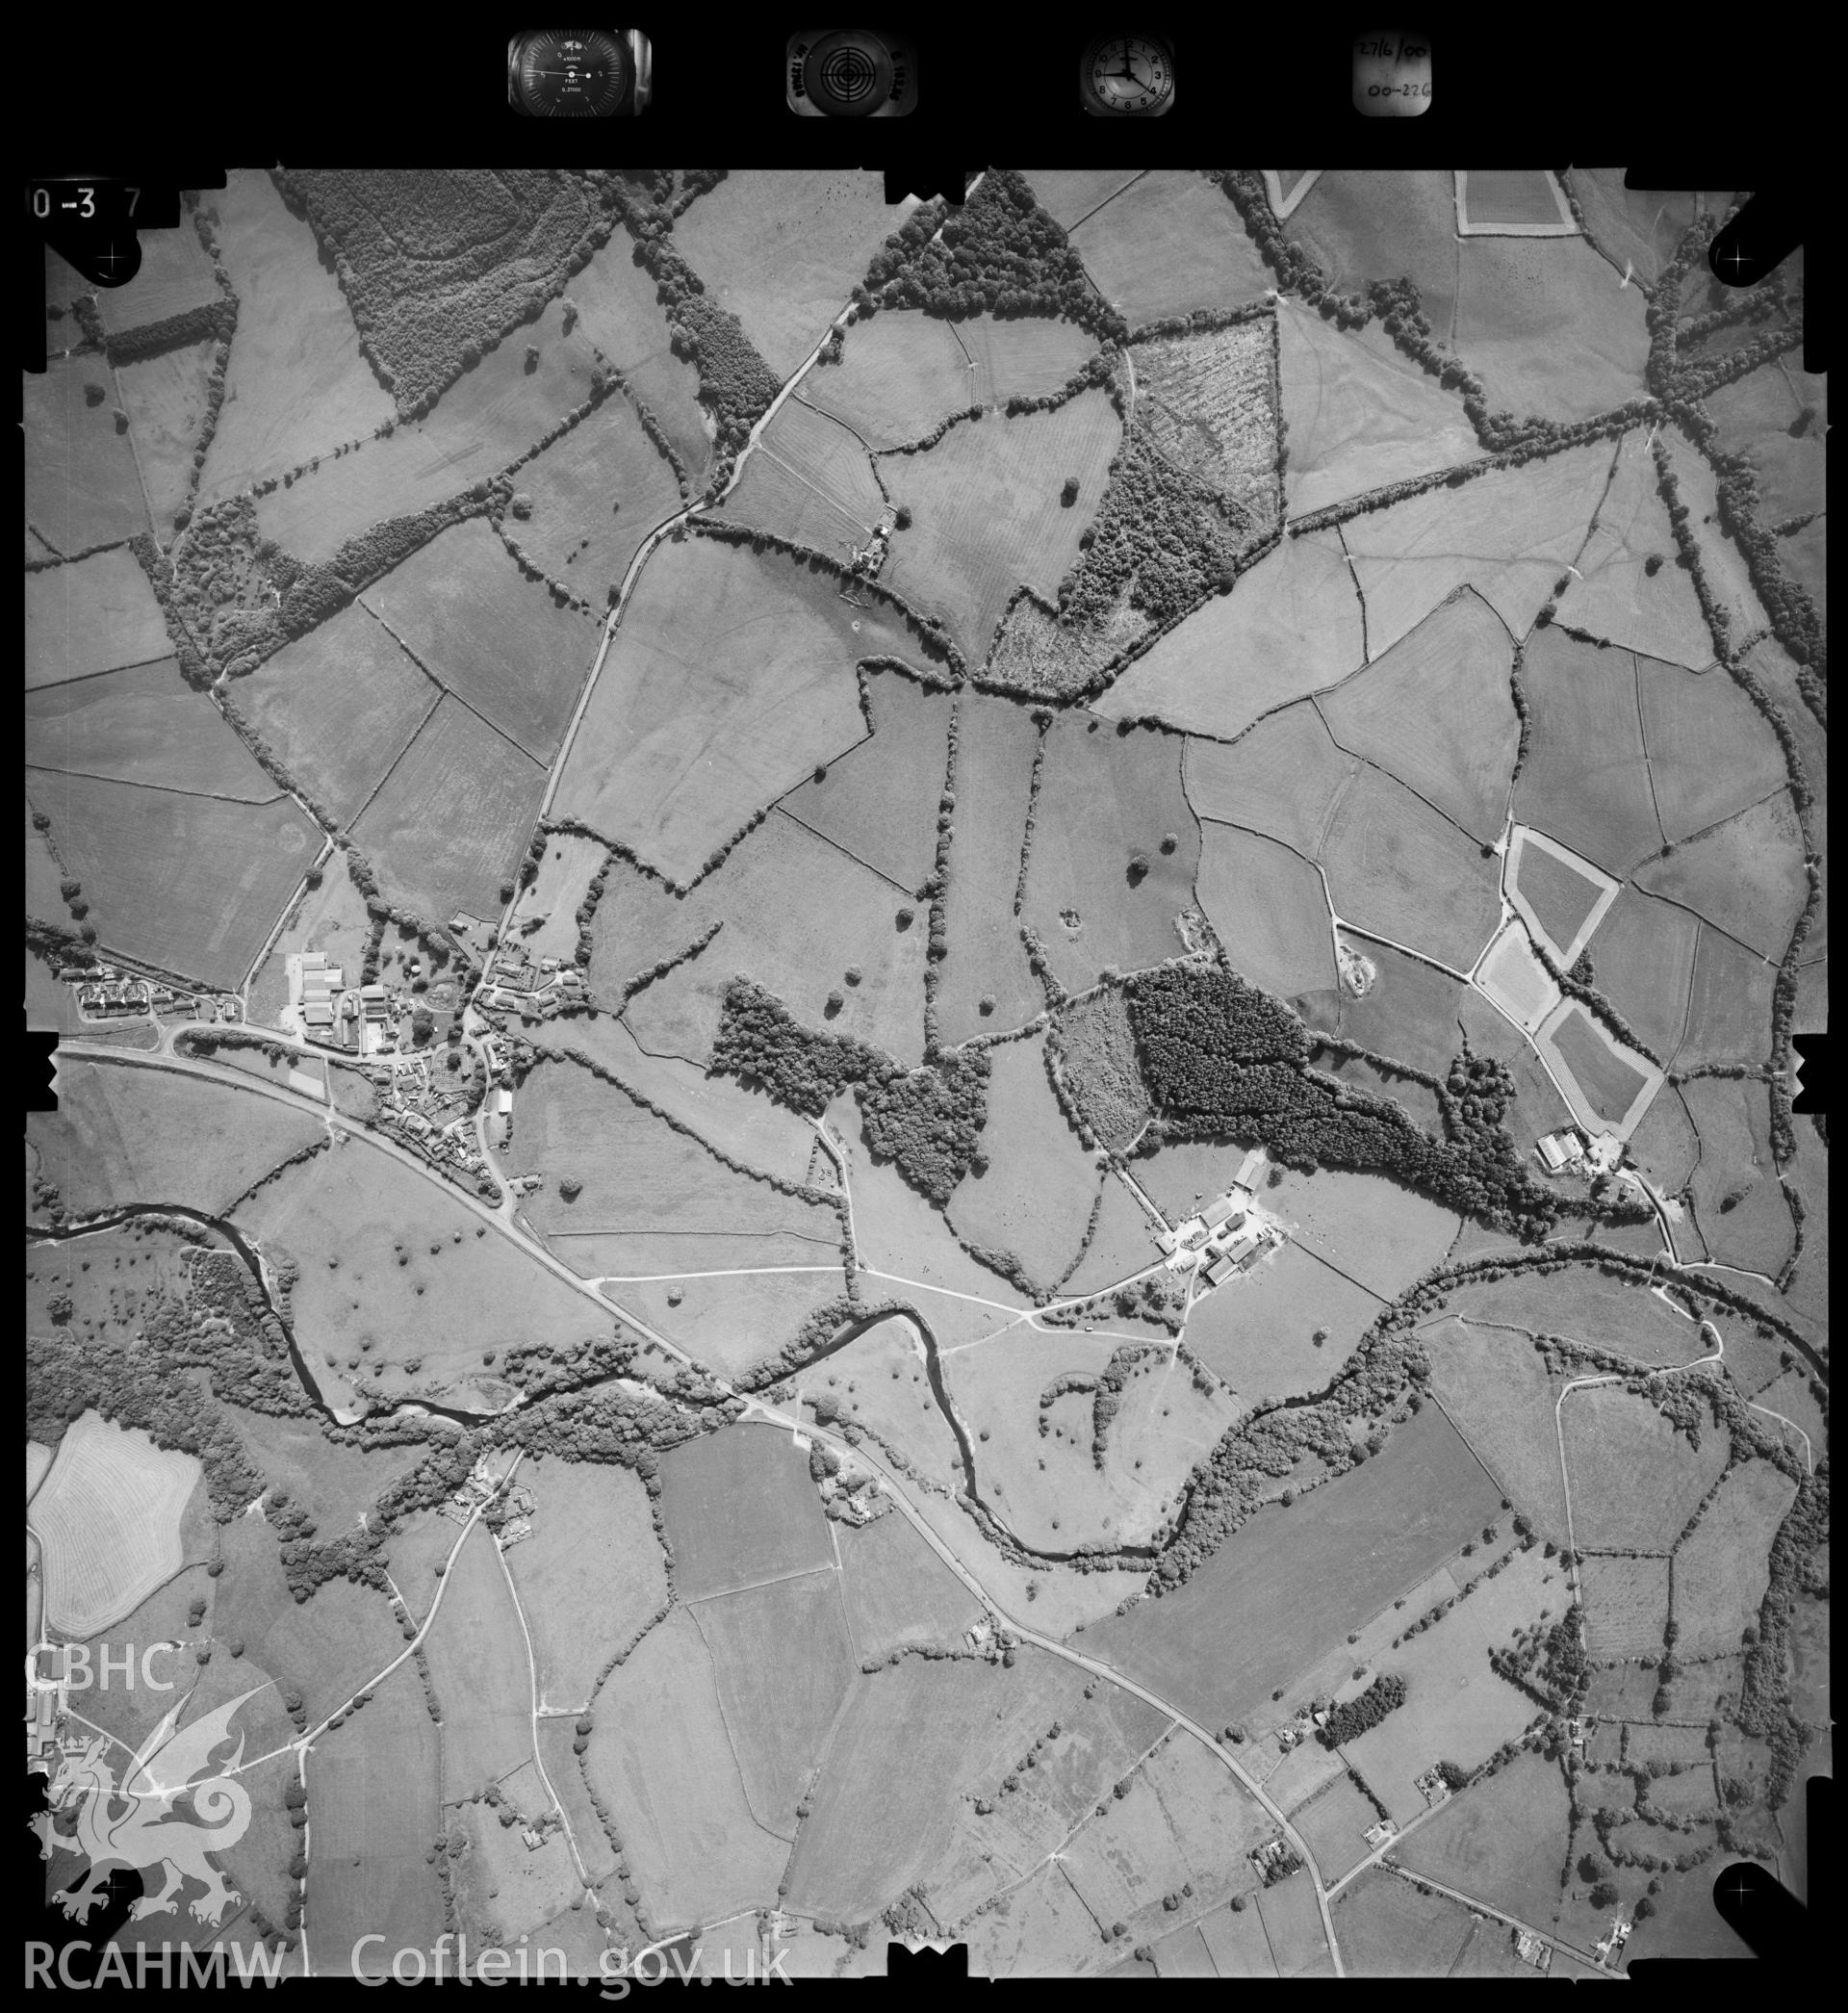 Digitized copy of an aerial photograph showing Llanddewi Ysrtadenny area, taken by Ordnance Survey, 2000.